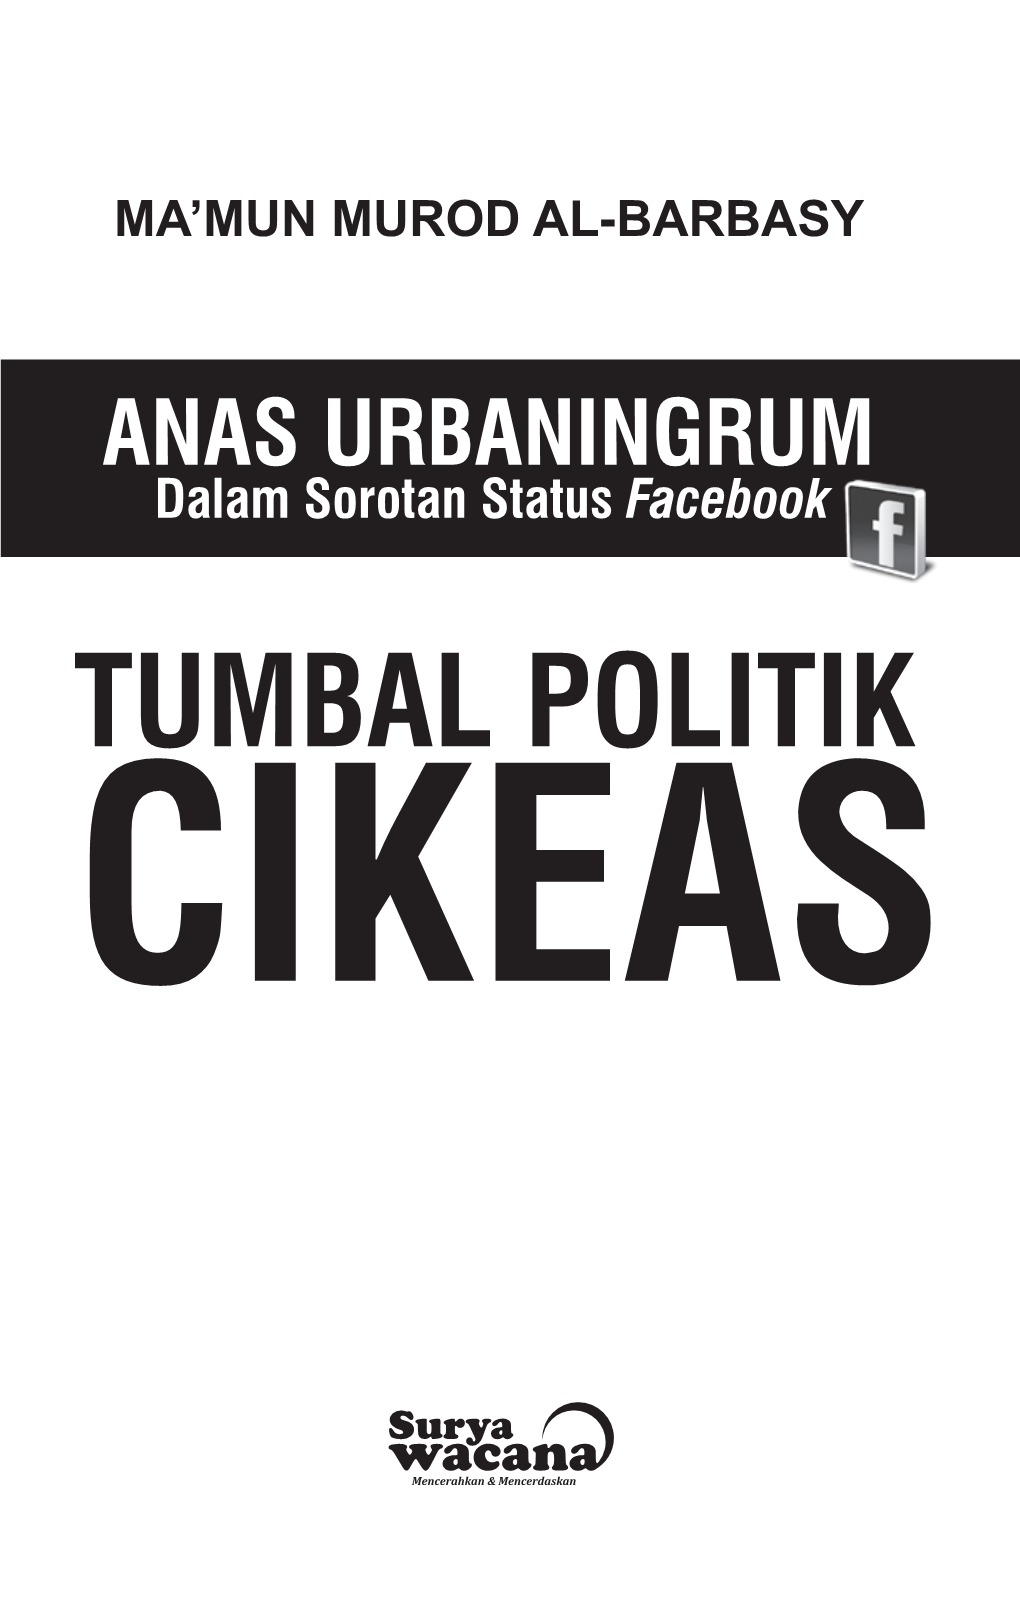 Tumbal Politik Cikeas Tumbal Politik Cikeas Anas Urbaningrum Dalam Sorotan Status Facebook